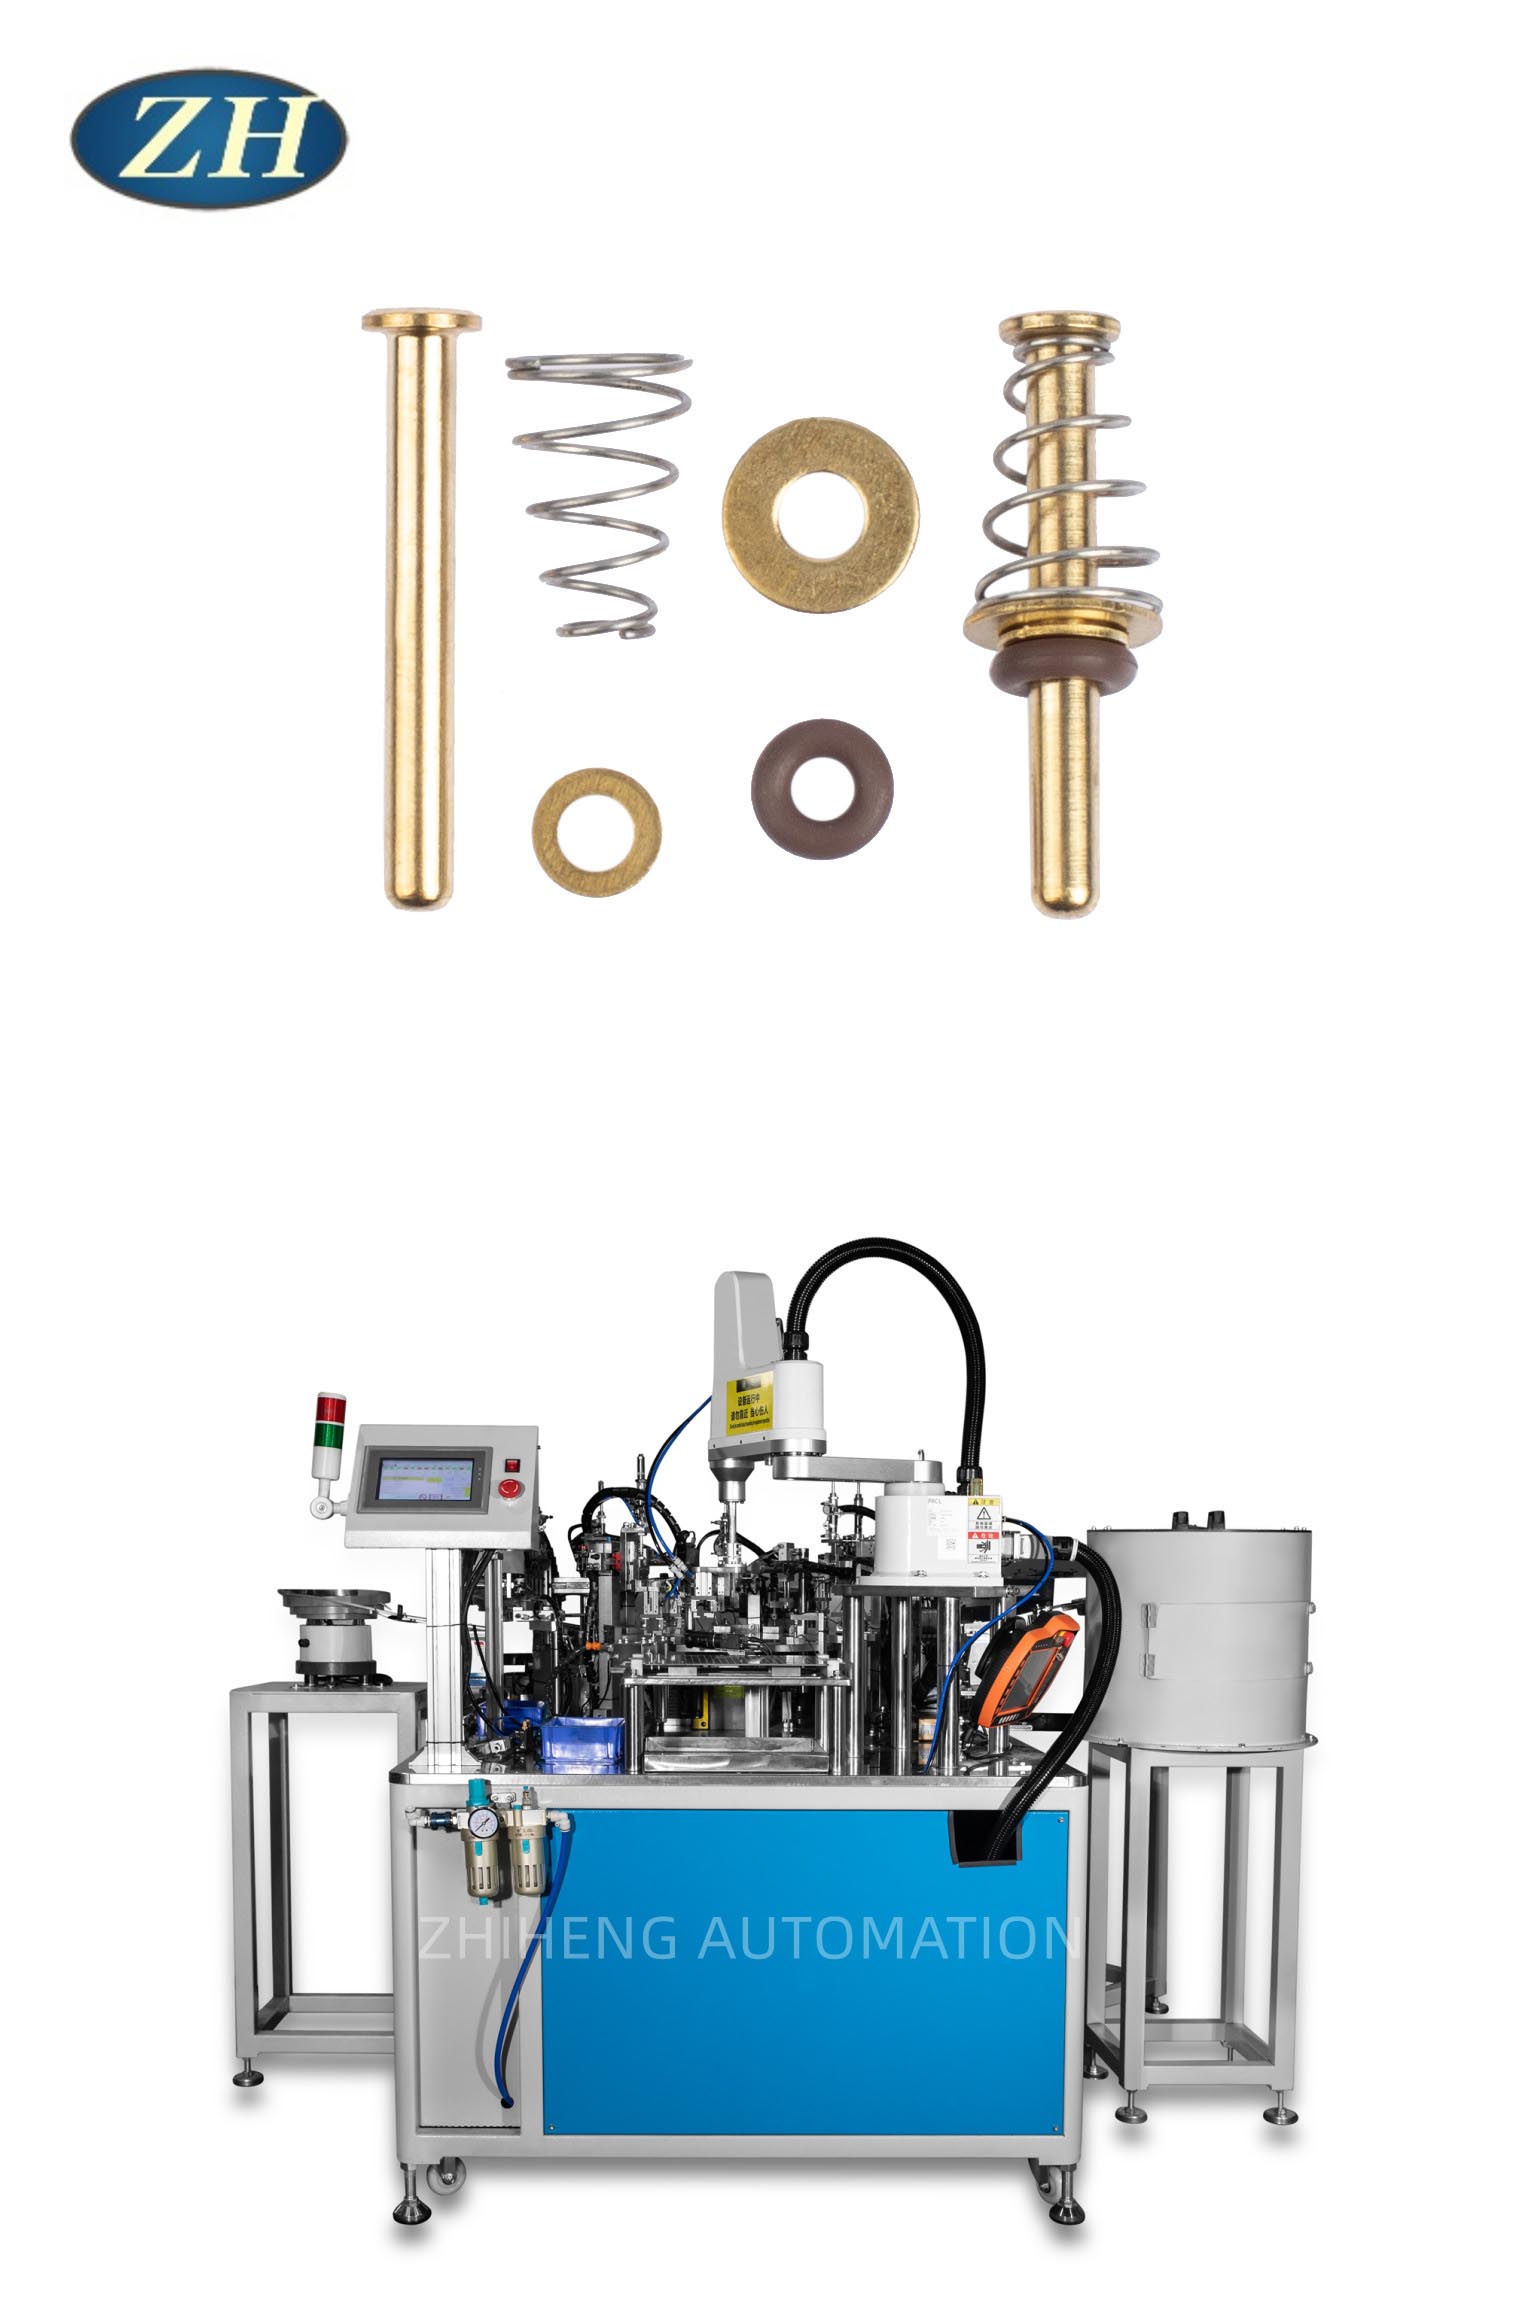 Nova máquina de montagem de núcleo de válvula de torneira torna a produção mais eficiente